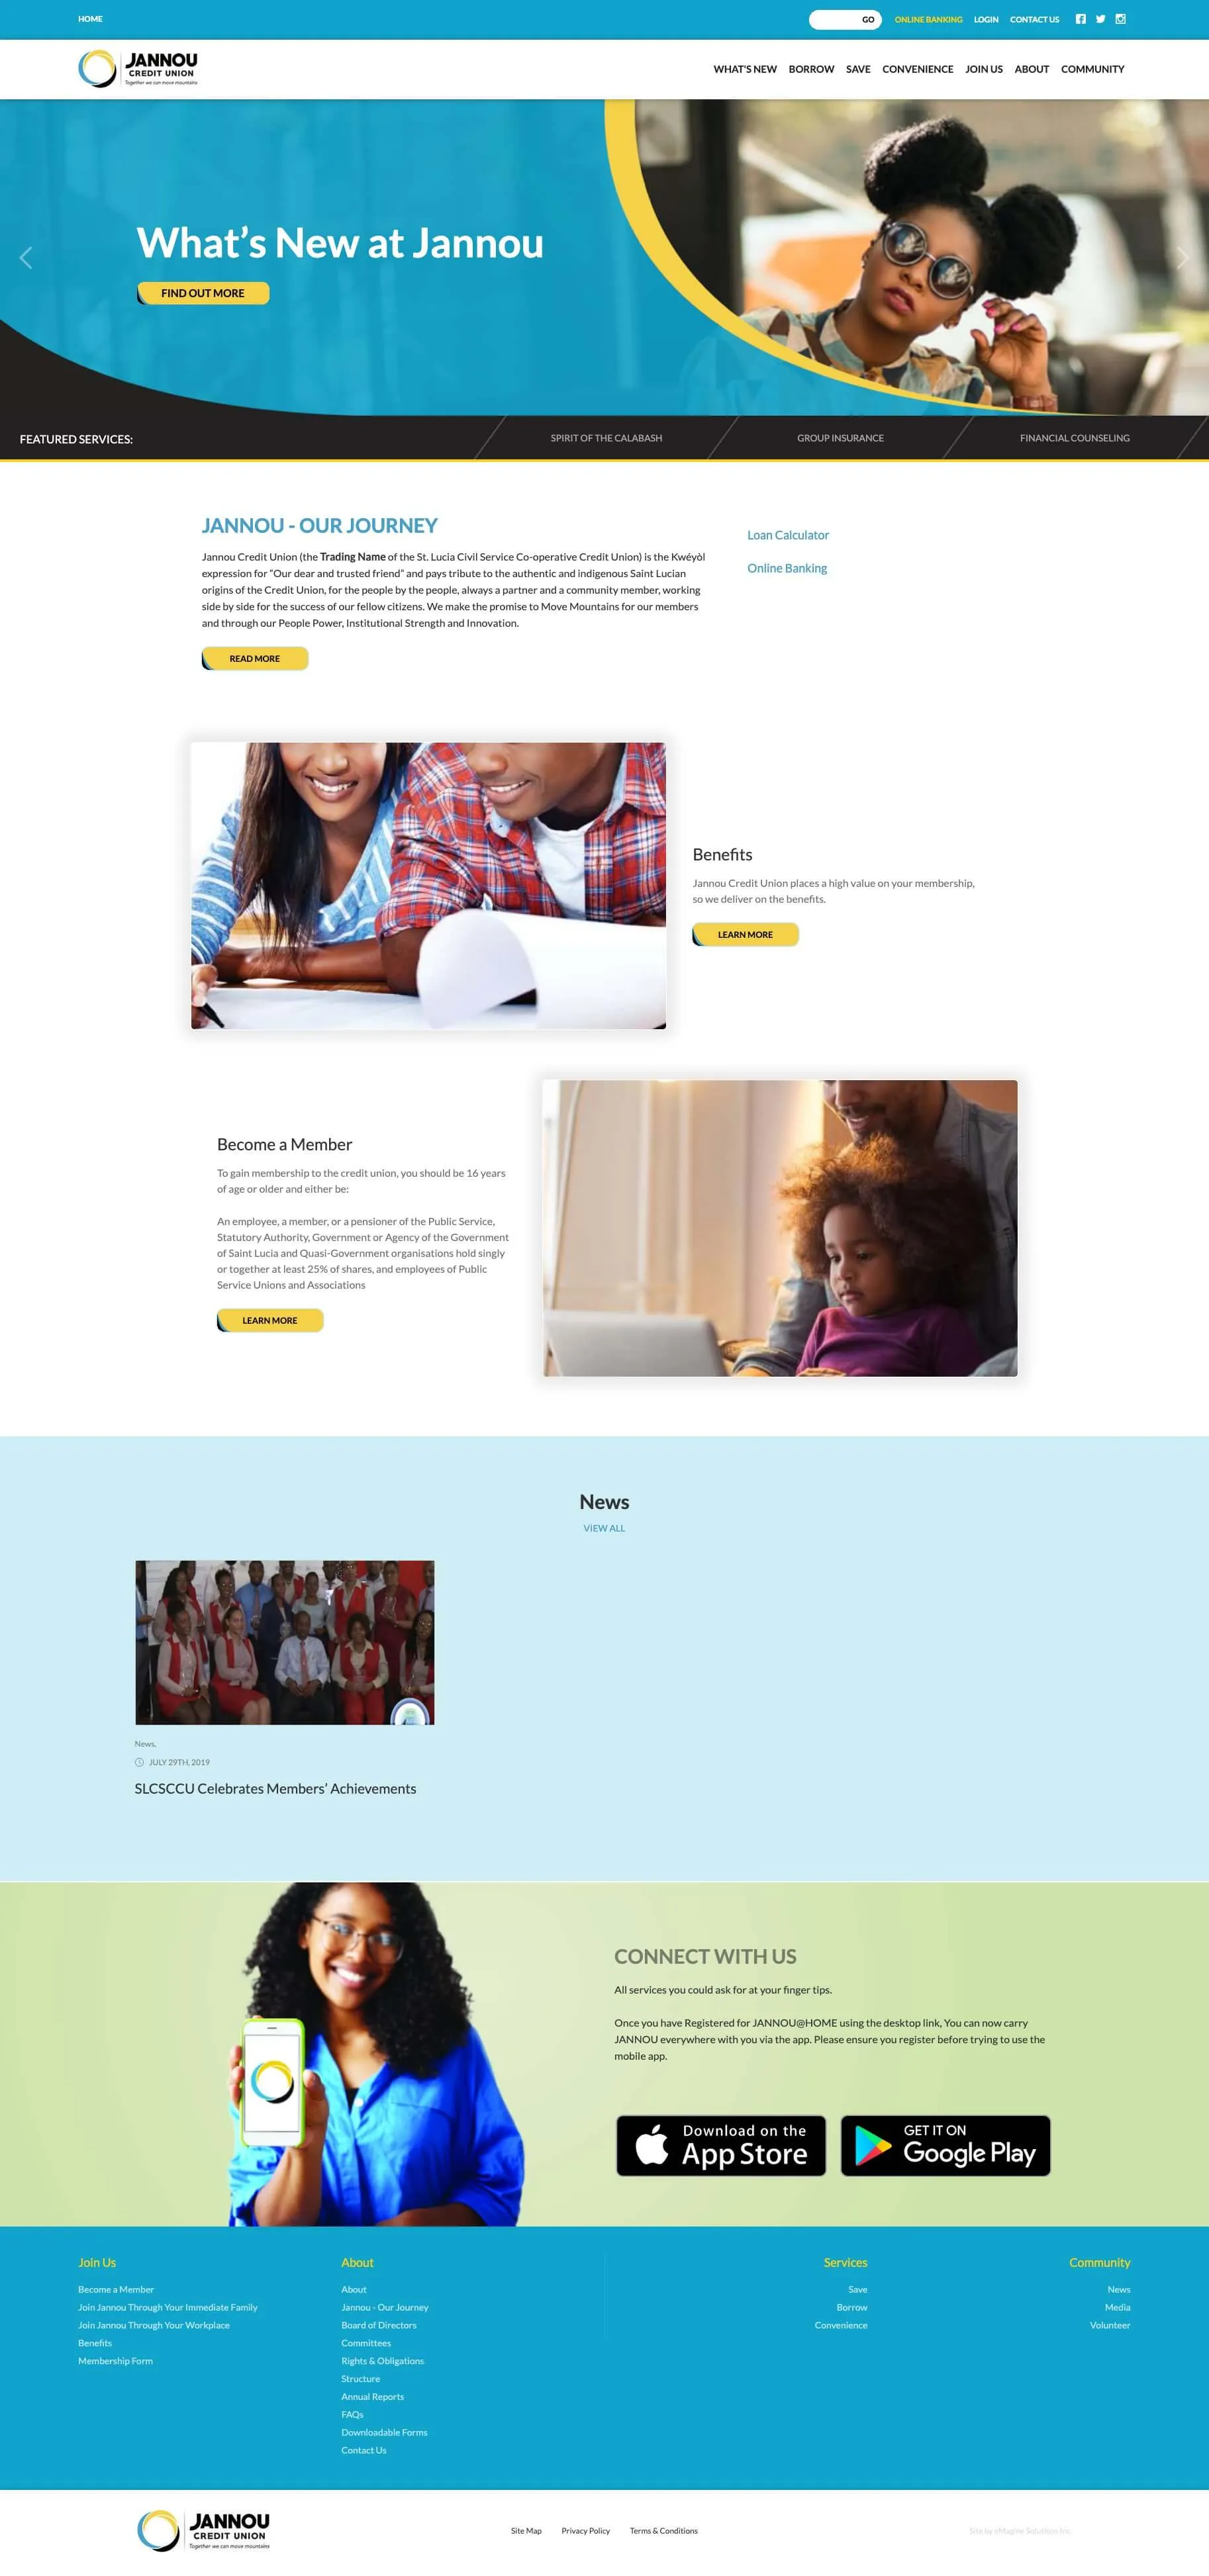 Redesigned website / rebranding design for Jannou Credit Union